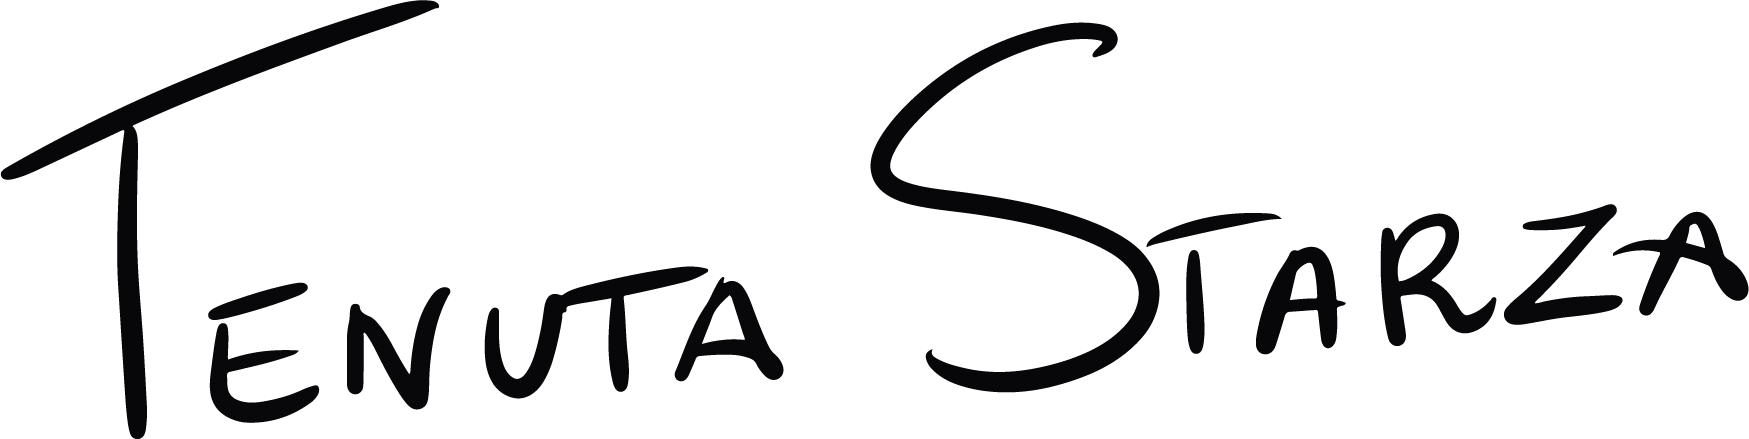 logo v3